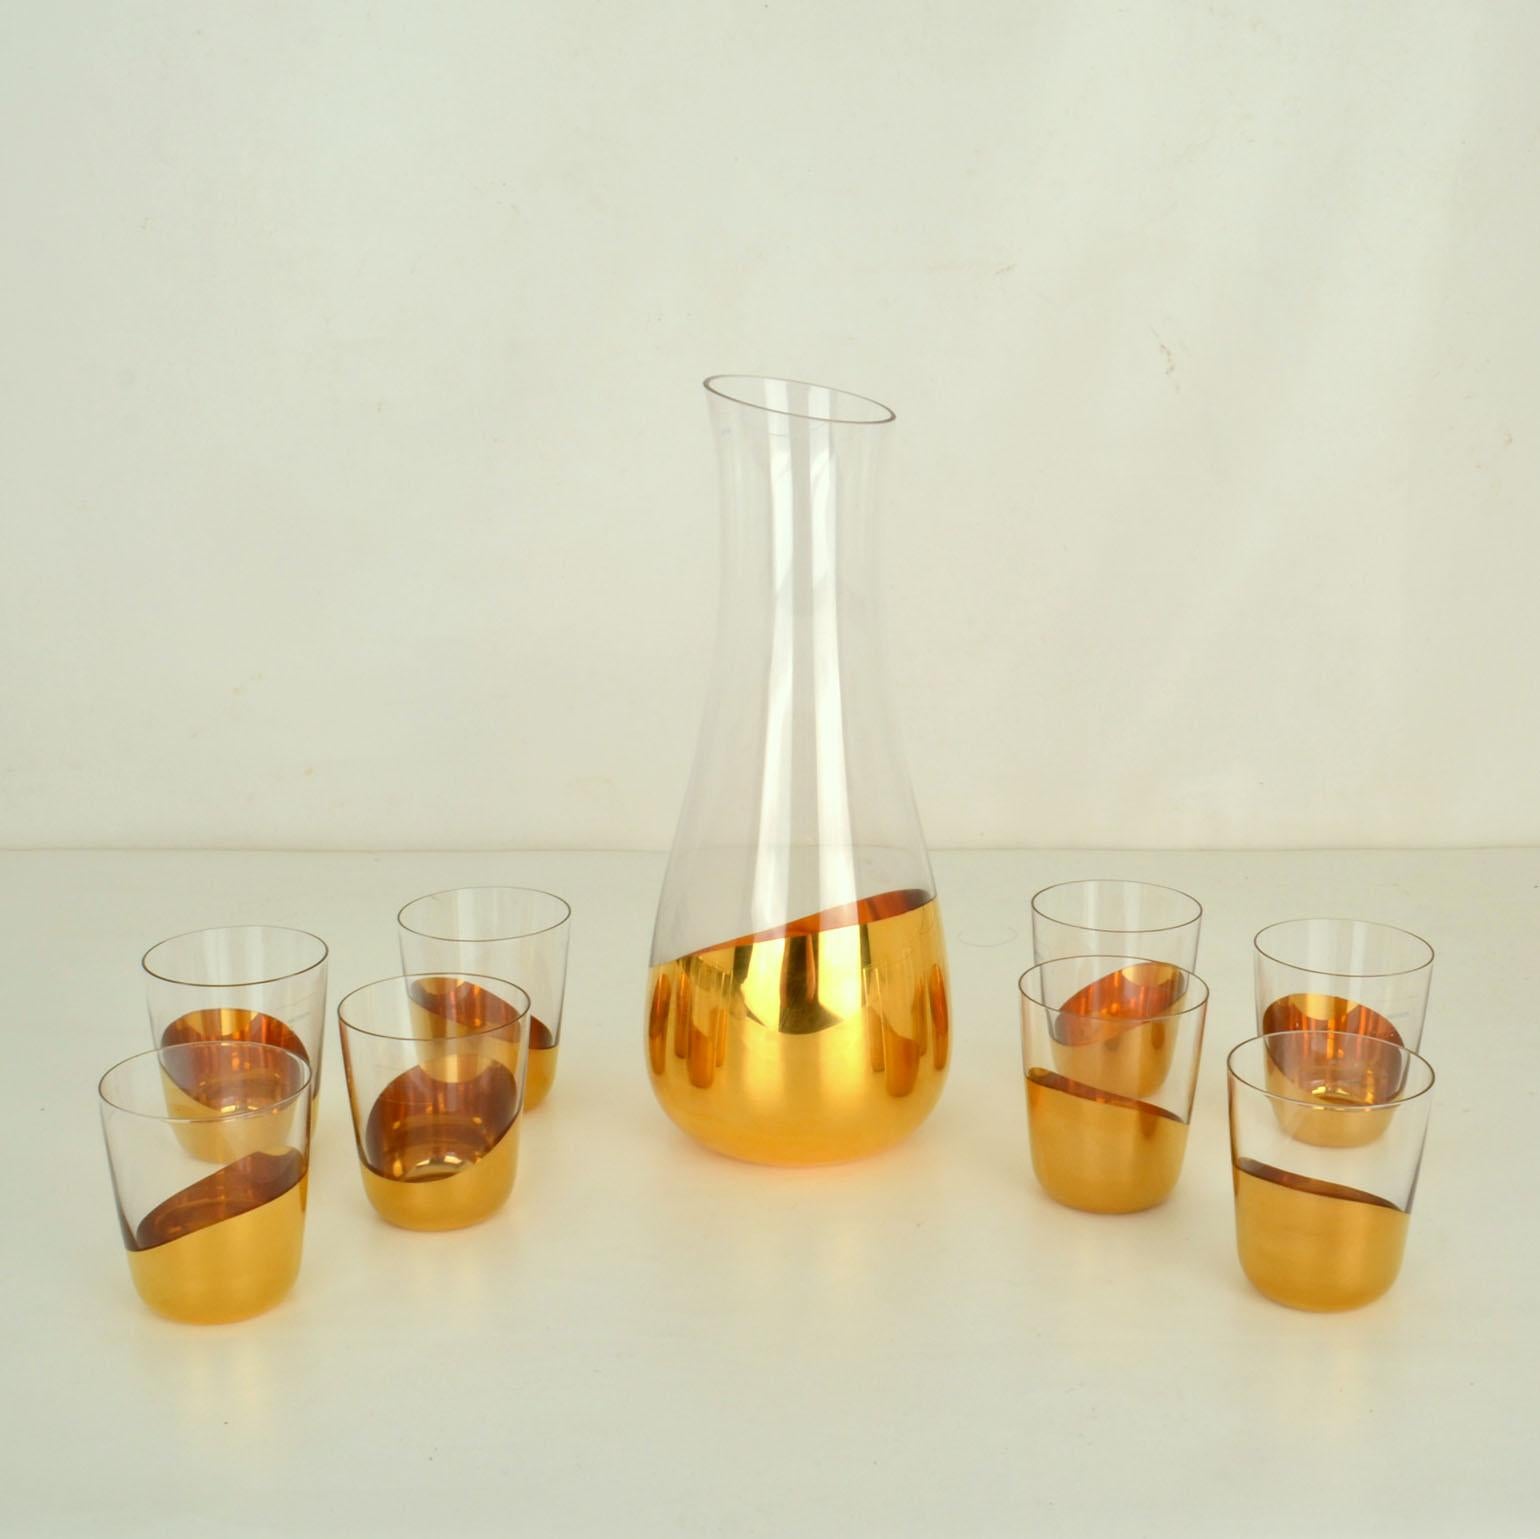 Zwei mundgeblasene Glaskaraffen und zehn in Gold getauchte Wassergläser von Front für Skitch, Italien 2010.
Das Gläser- und Karaffen-Set Midas bietet eine zeitgenössische und ironische Version von Luxus-Glaswaren. Getaucht in Gold Bad schafft eine